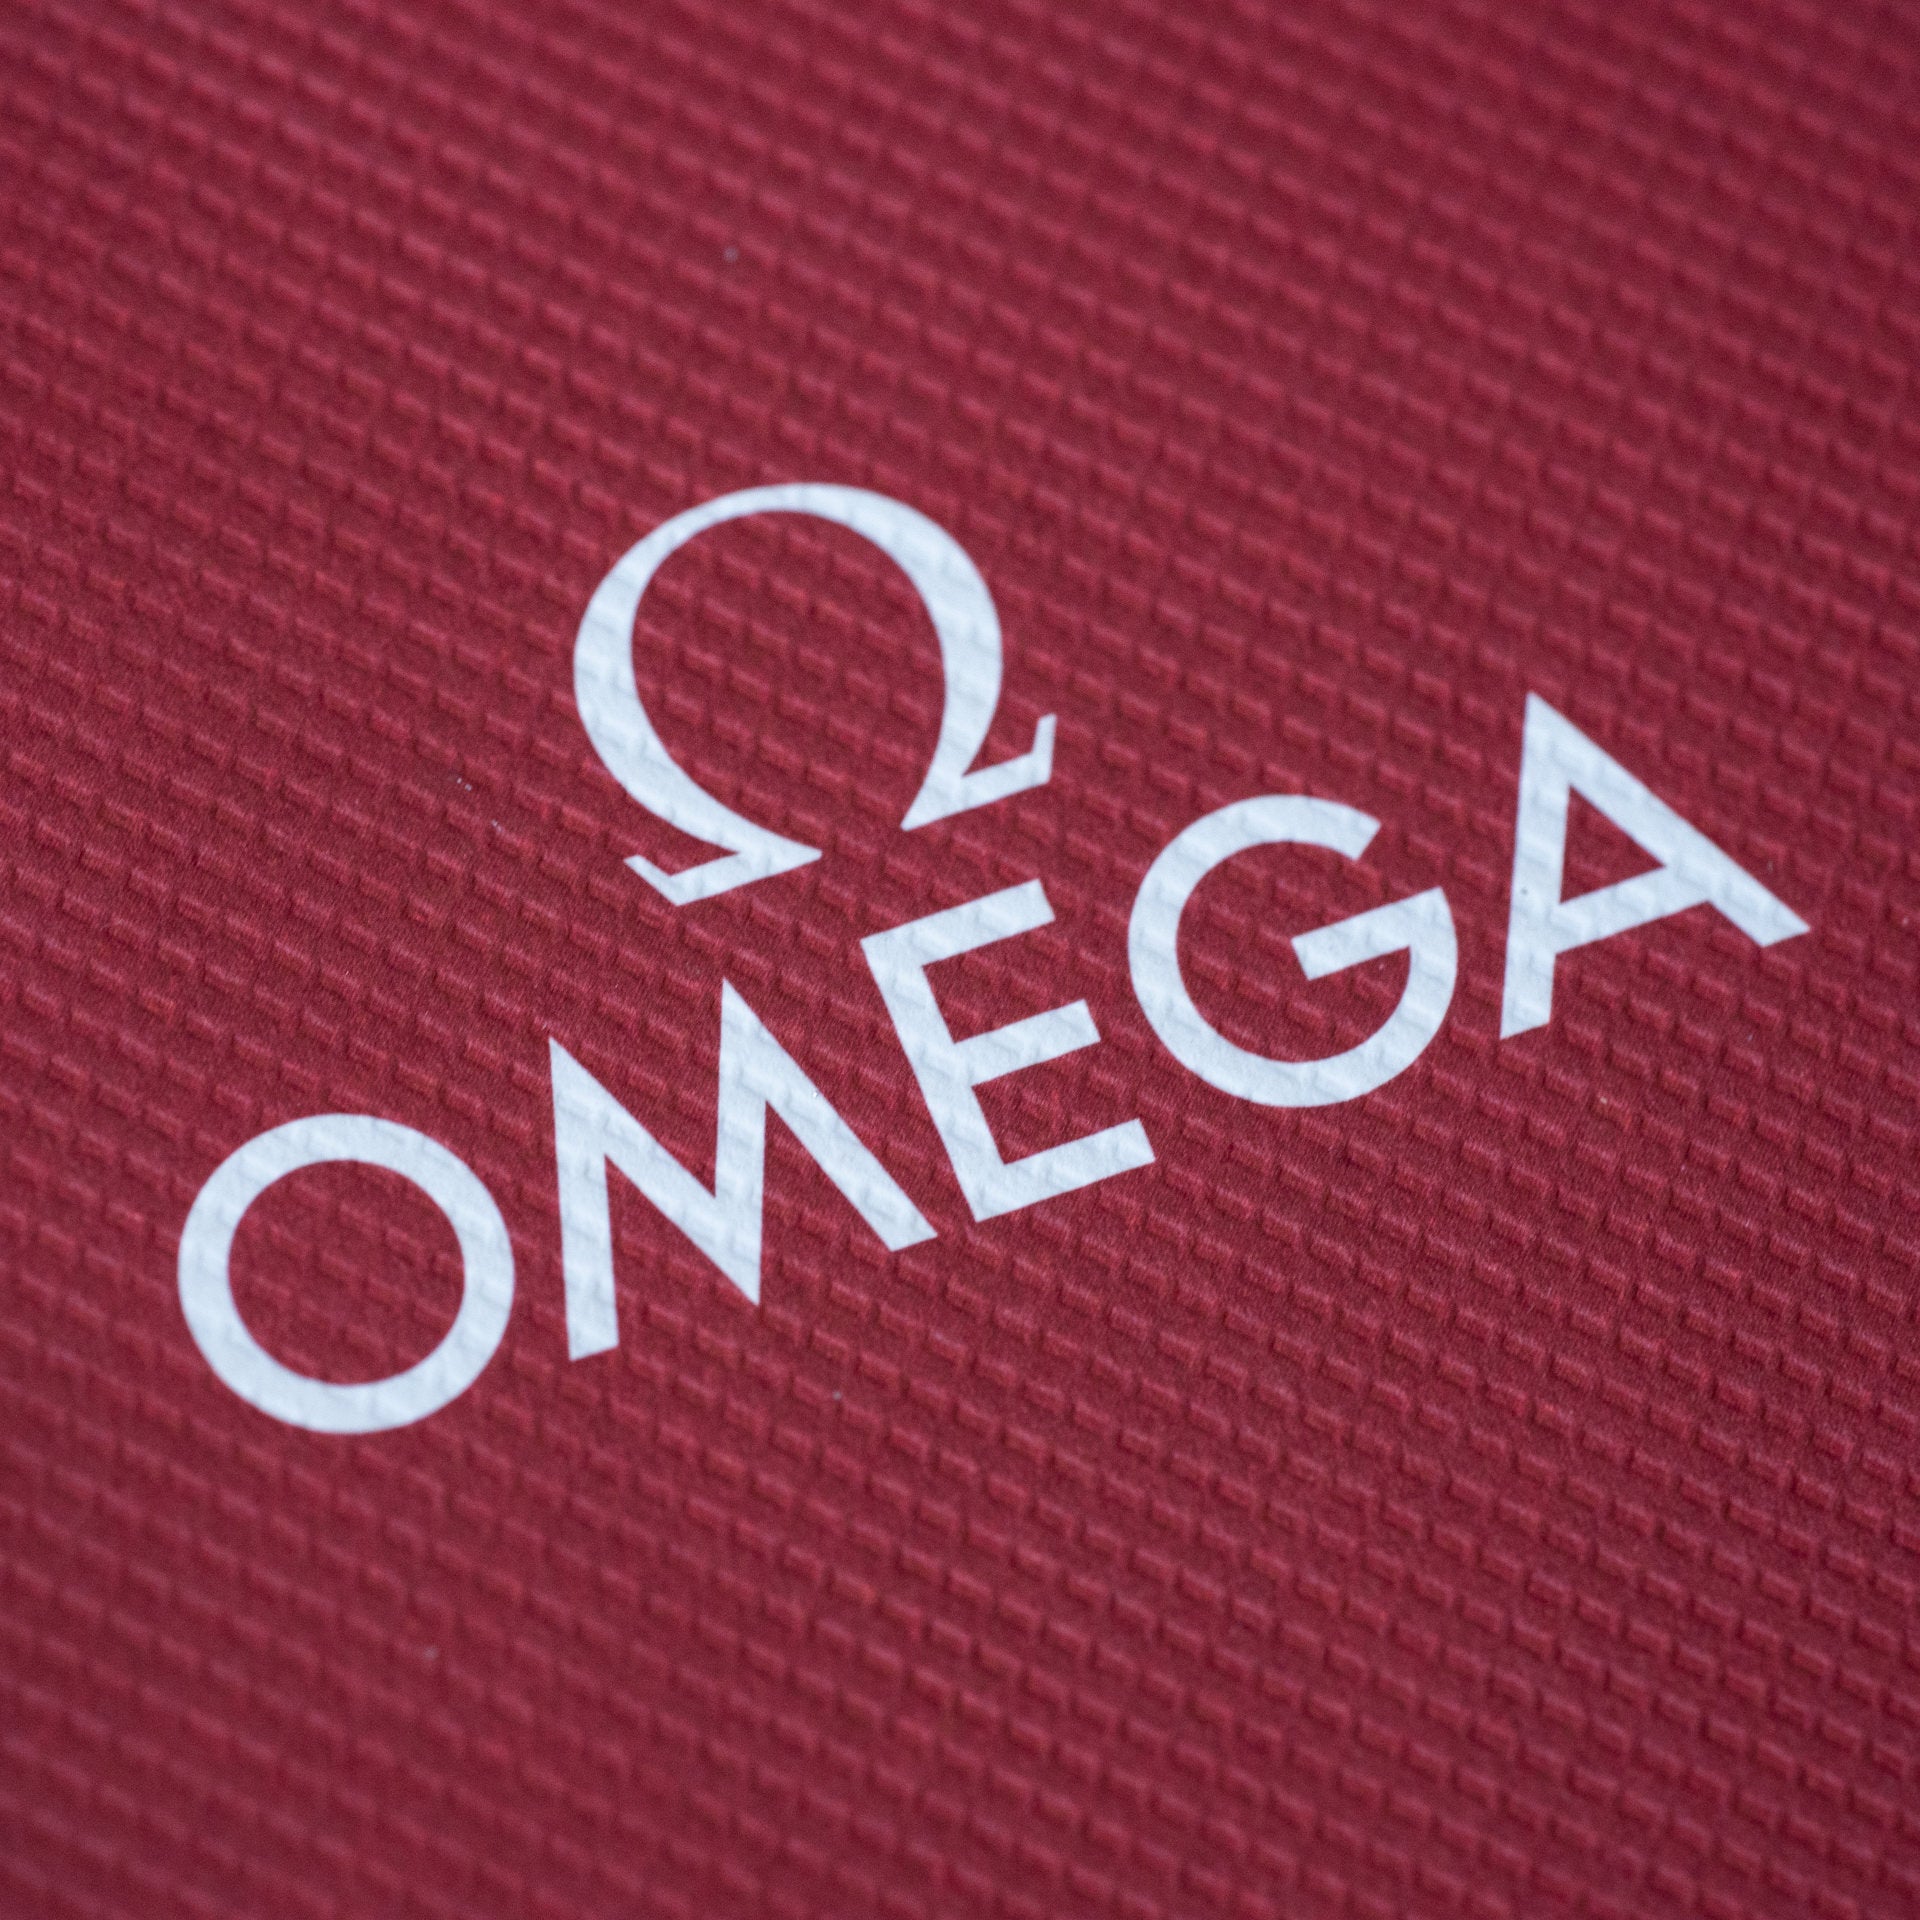 OMEGA オメガ スピードマスター プロフェッショナル アラスカ・プロジェクト